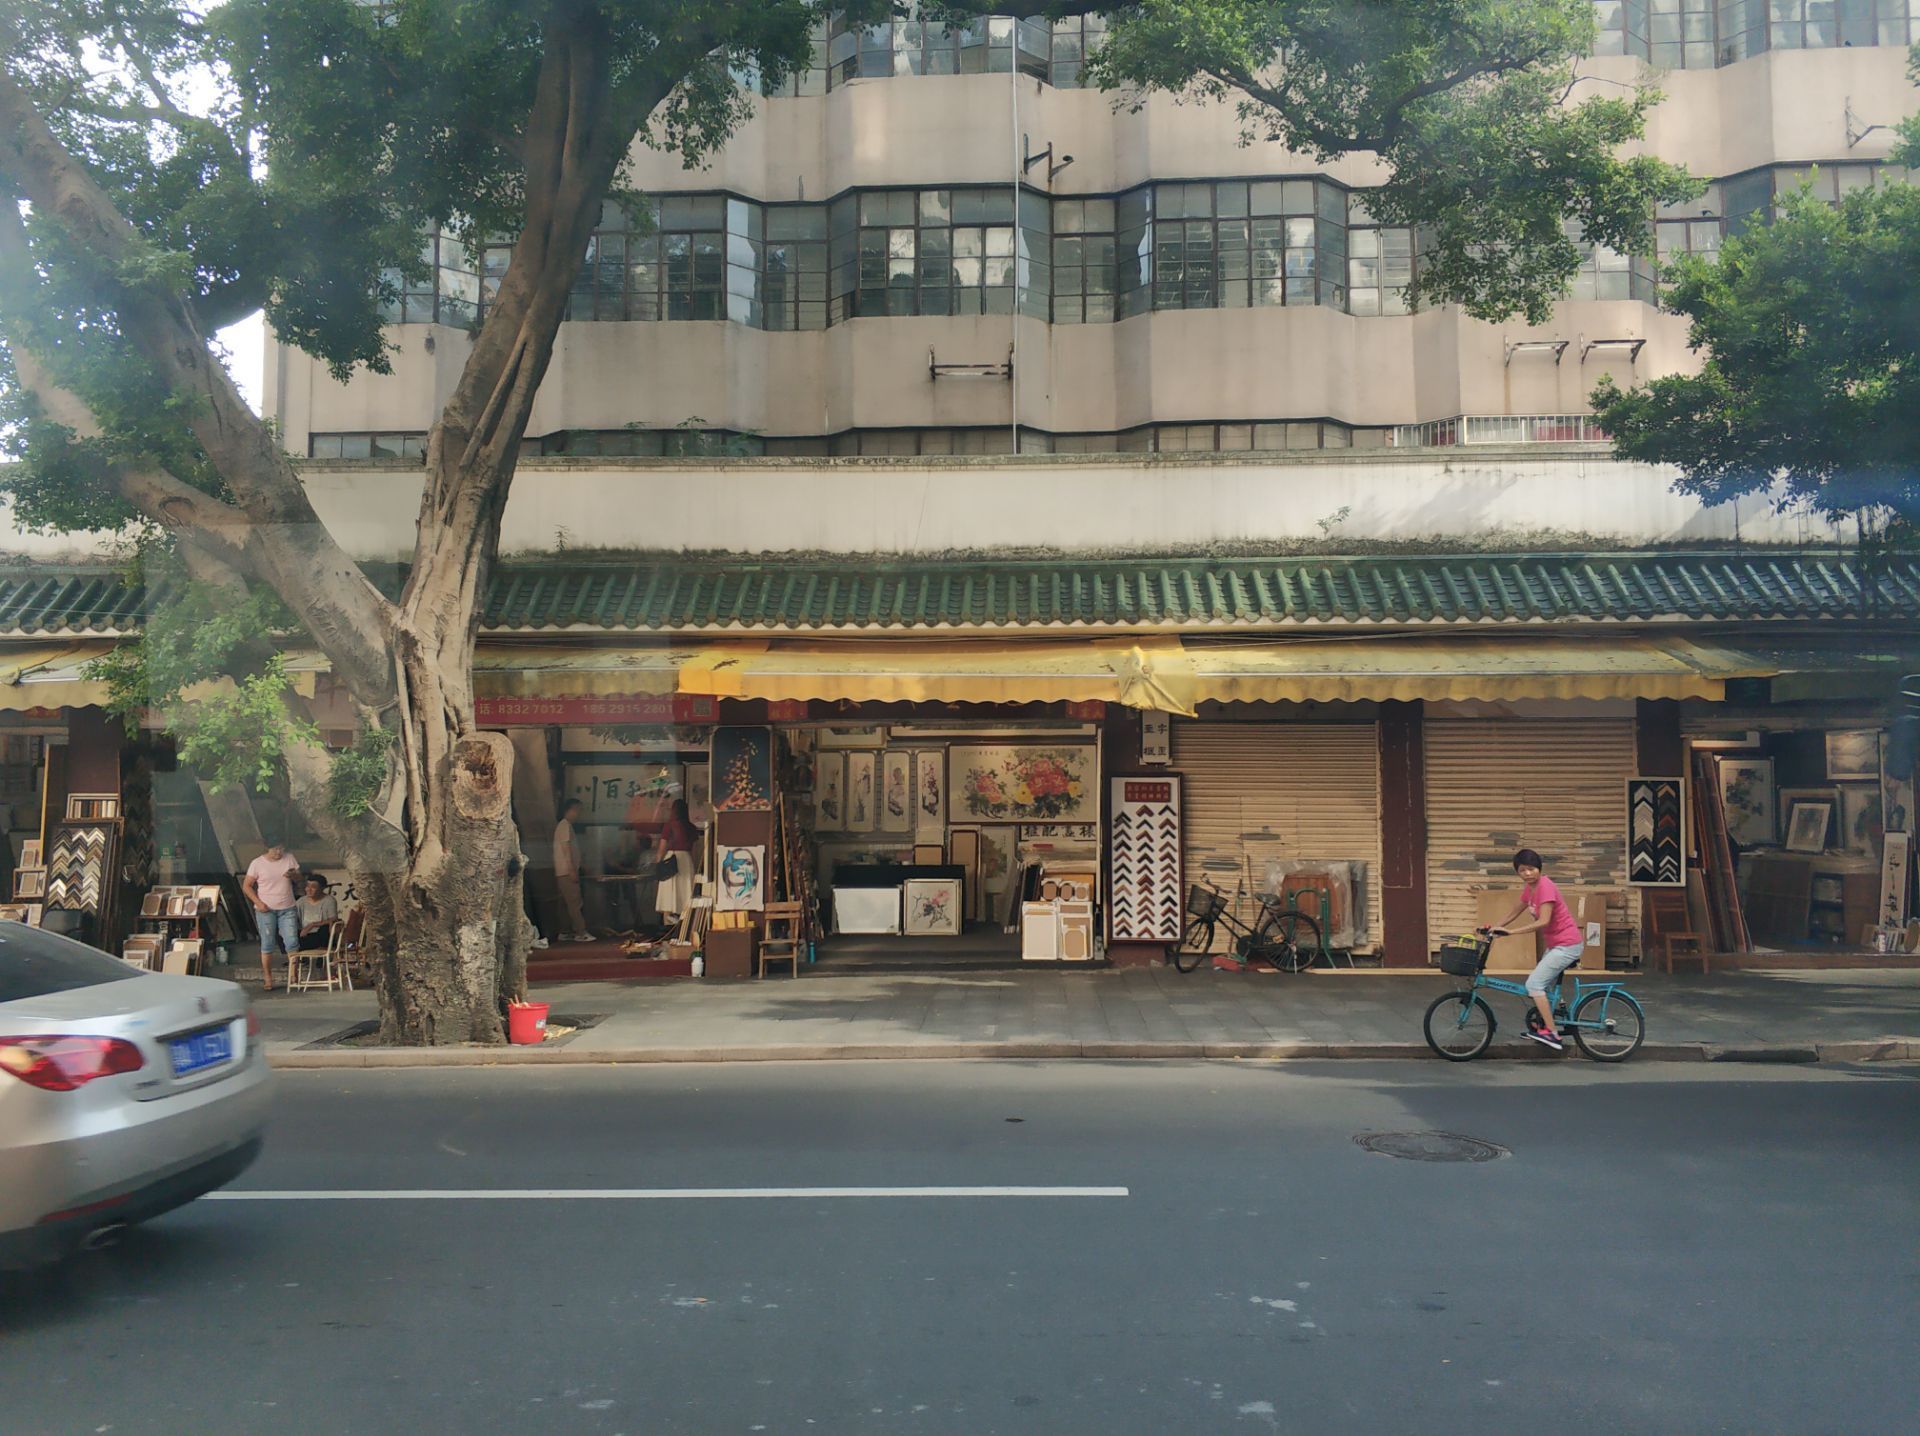 【携程攻略】广州文德路文化街景点,文德路的字画街是在广州的一个